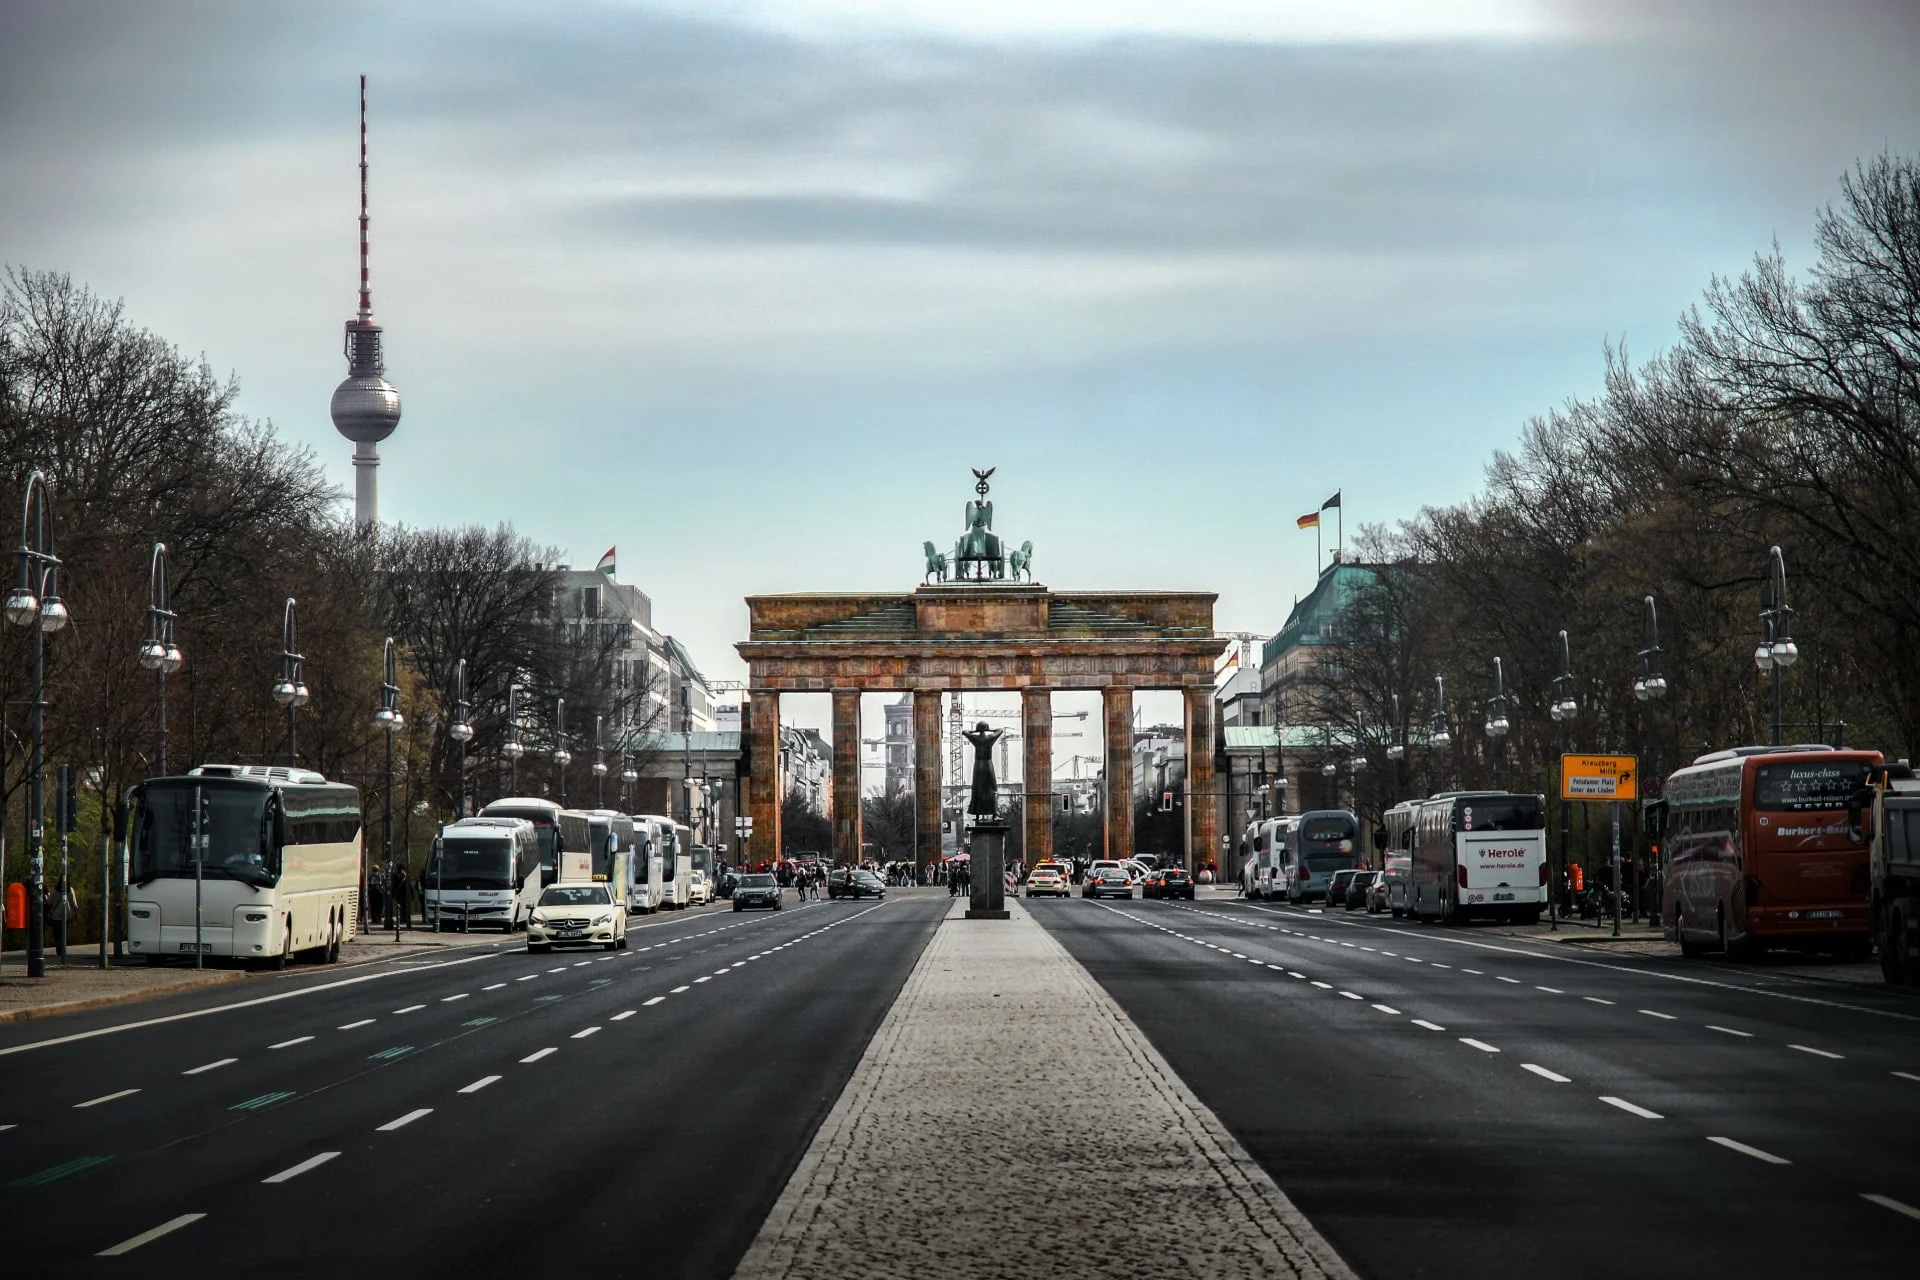 Brandenburg gate in berlin, germany.